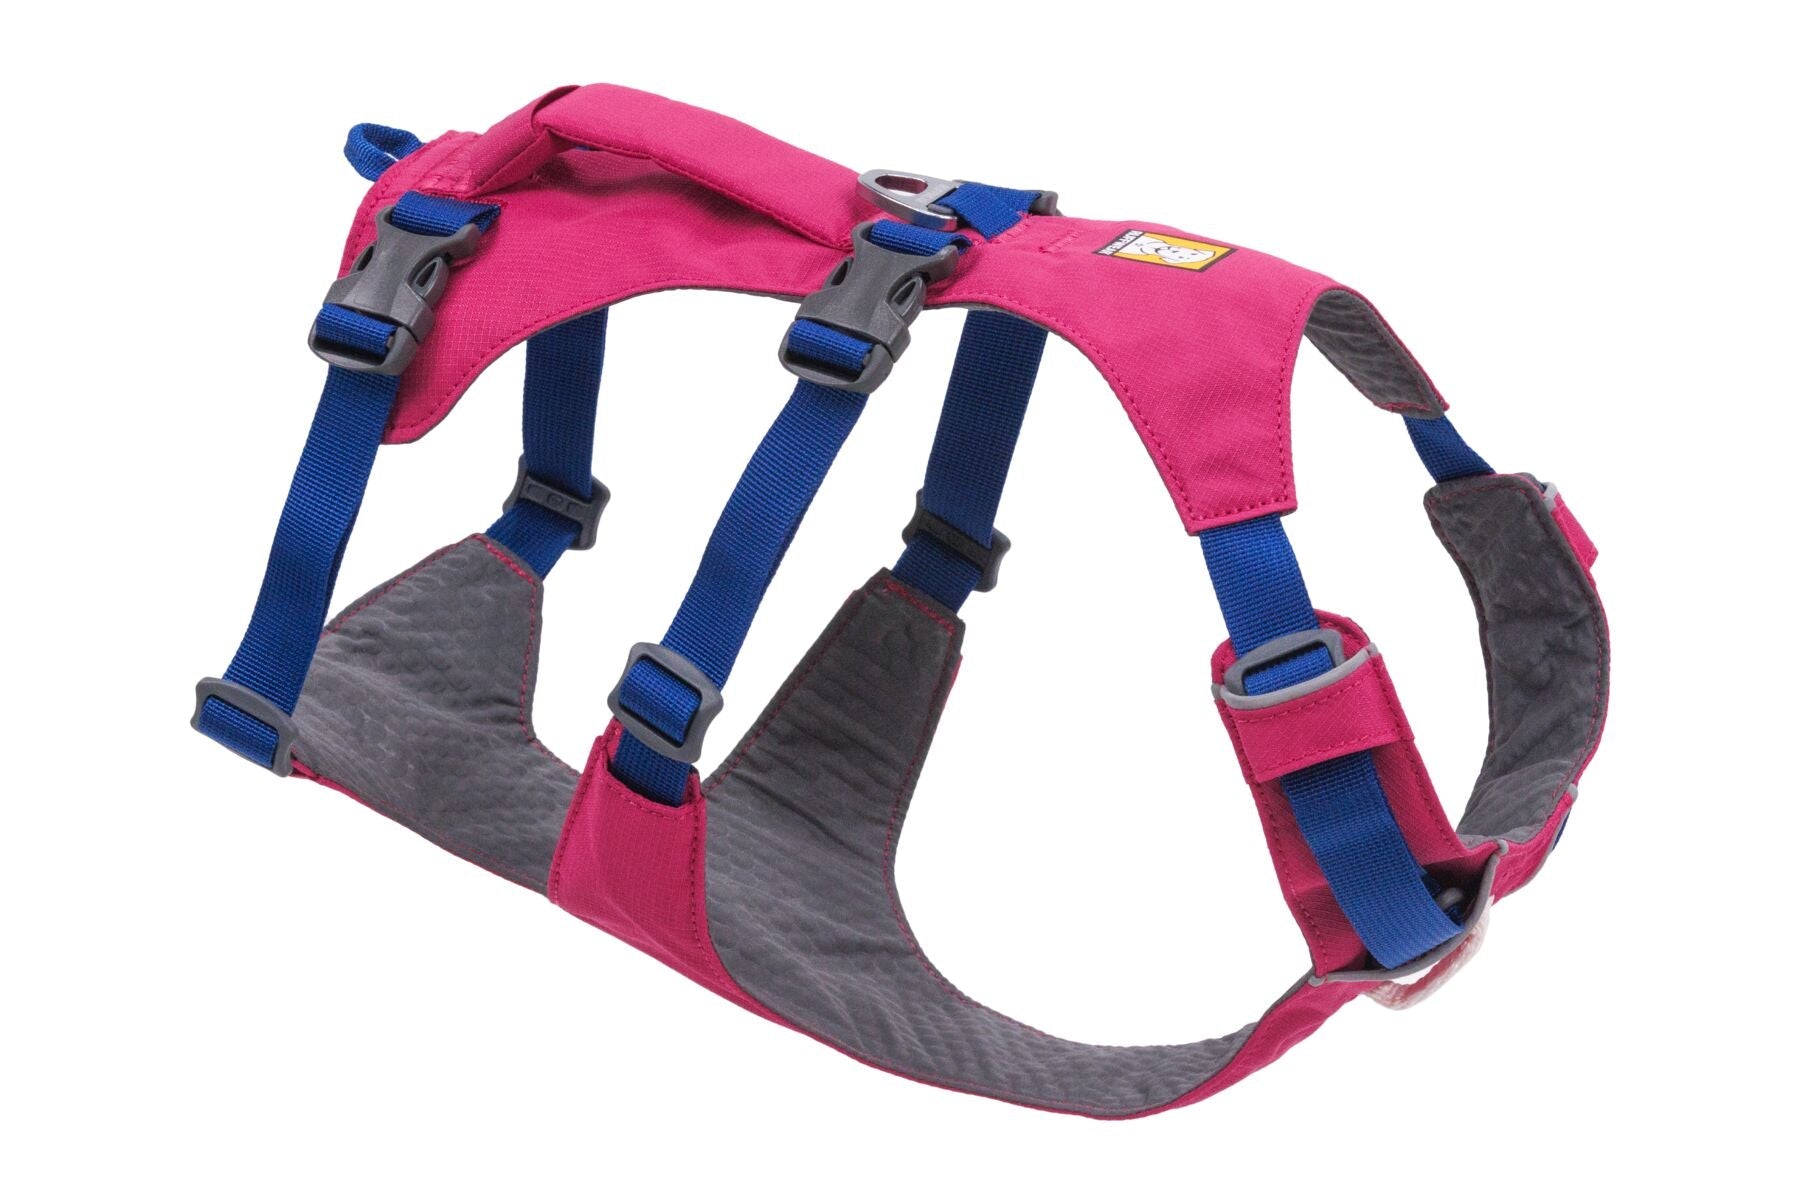 Flagline Harness® Pechera Multiusos en Rosa Alpino (Alpenglow Pink) de Ruffwear